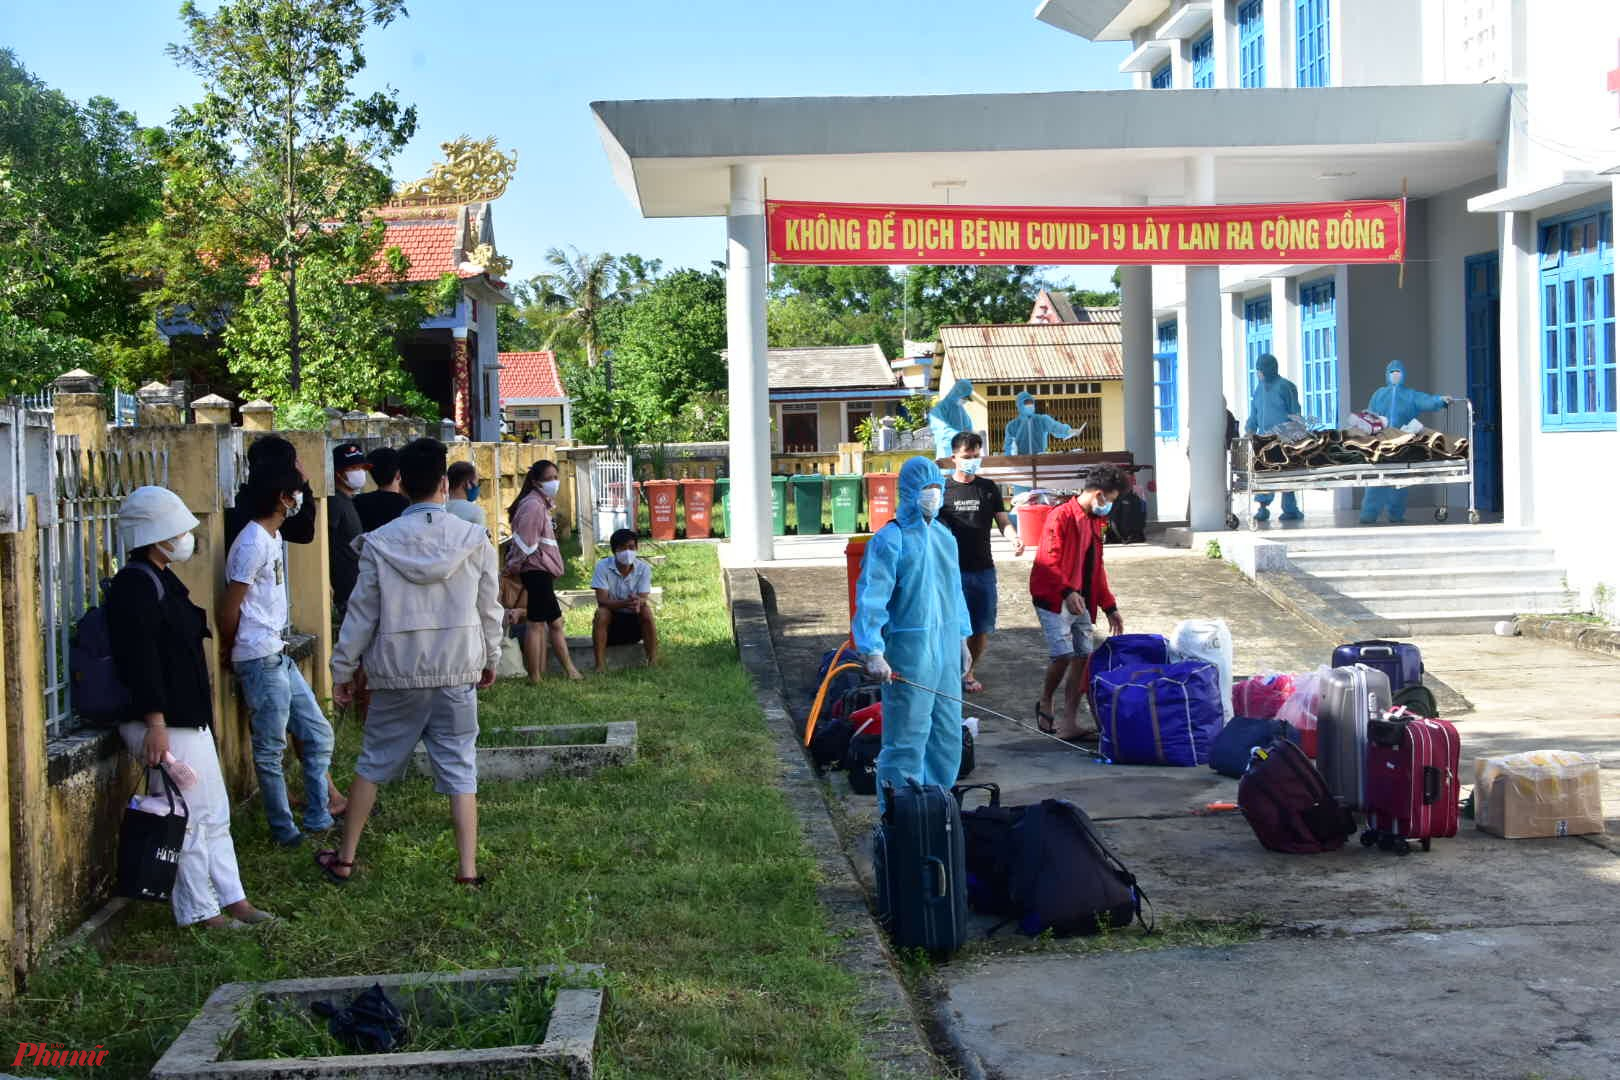 Trước đó có 26 công dân Huế  từ TP HCM trở về bằng đường tàu hỏa đã được cách ly tại huyện Phong Điền